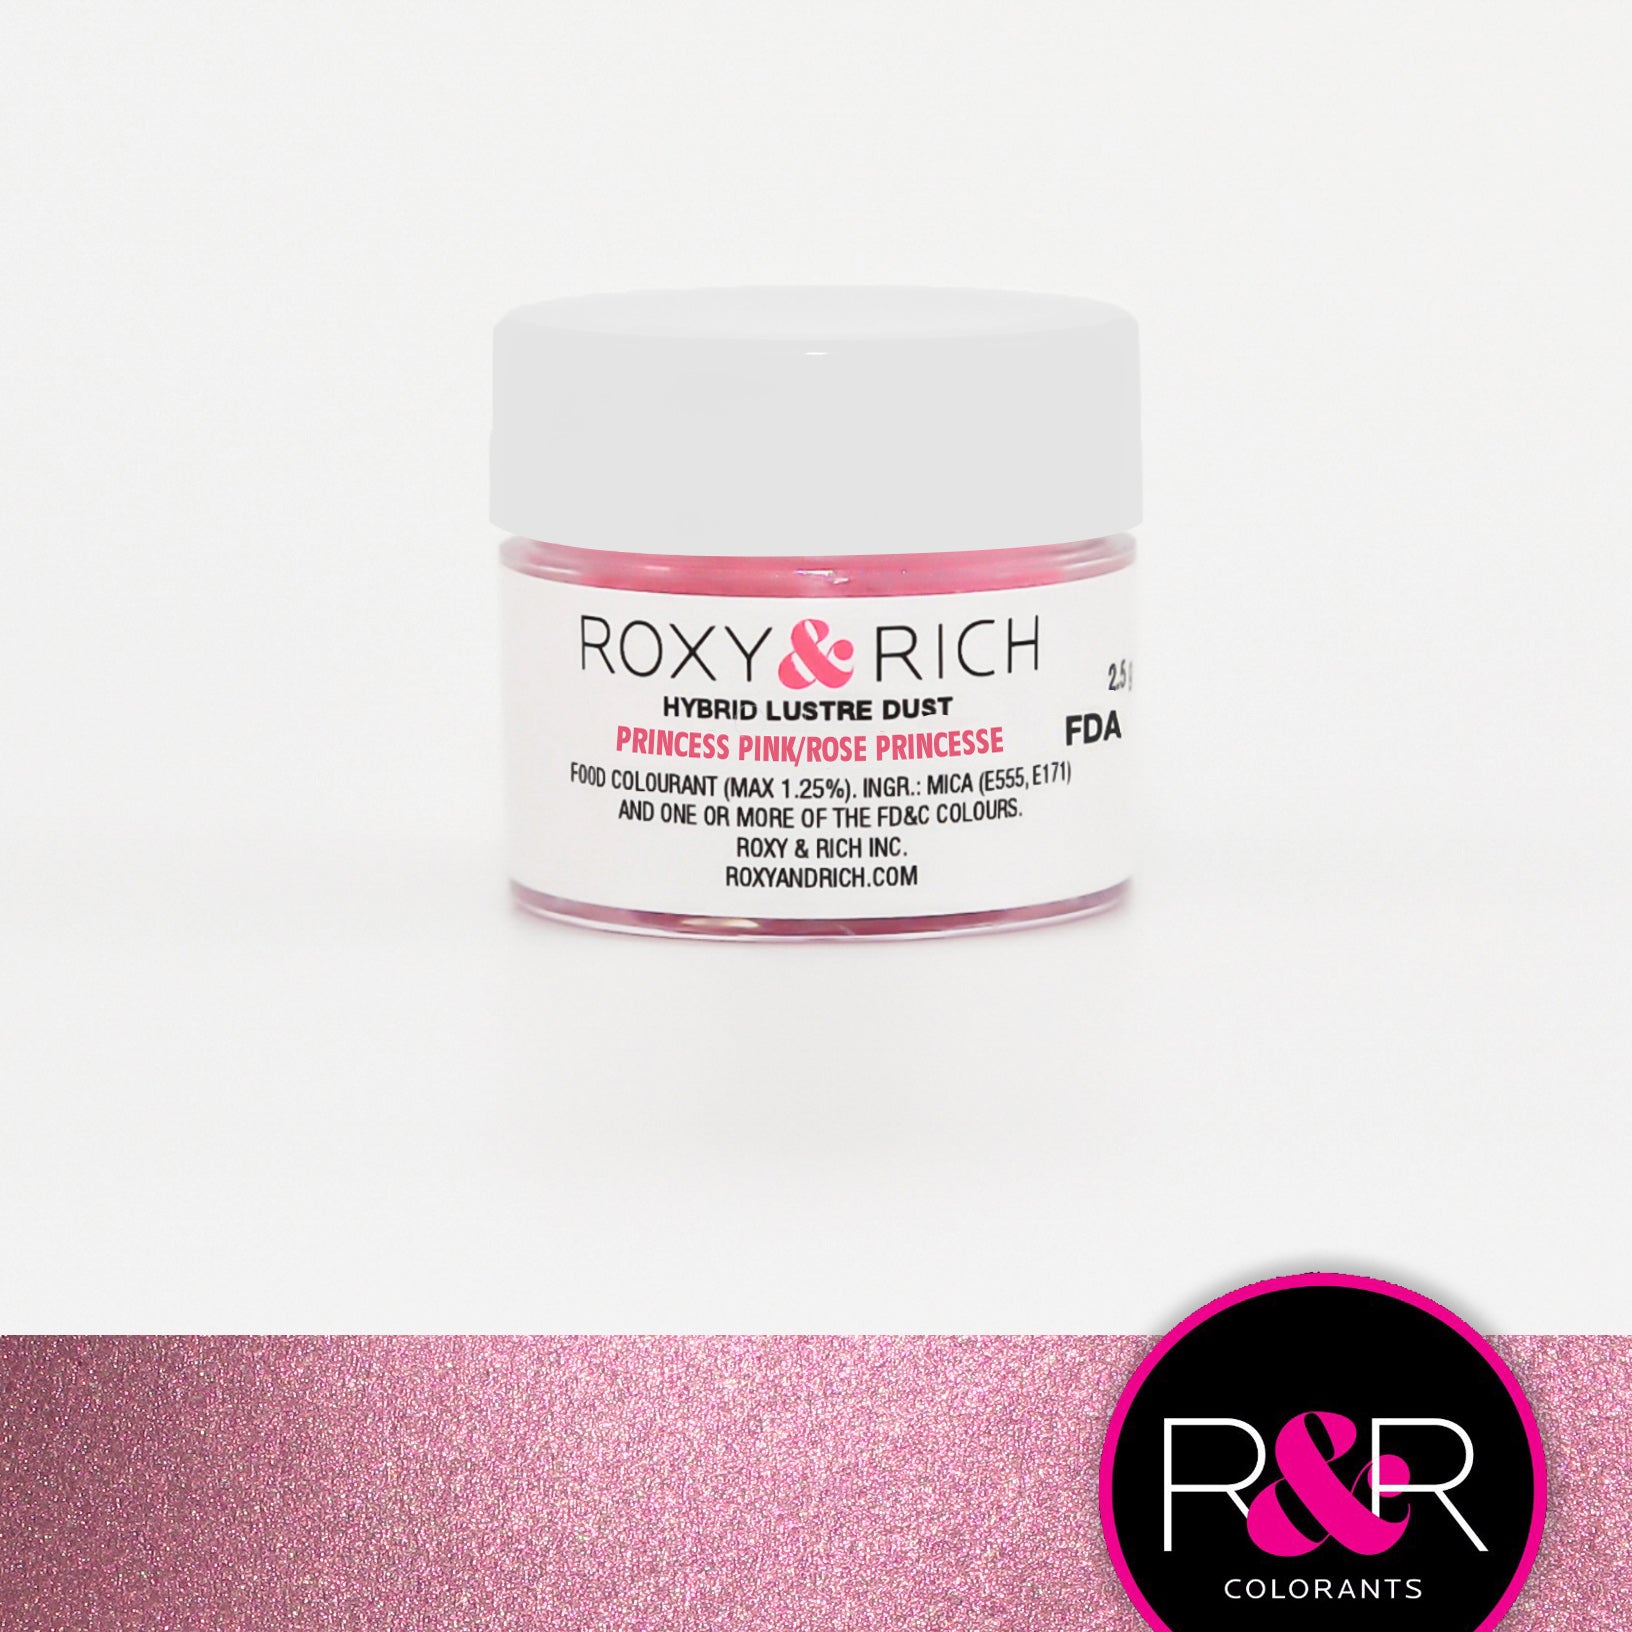 Poudre lustrée hybride Rose Princesse    - Roxy & Rich - Poudre lustrée - 